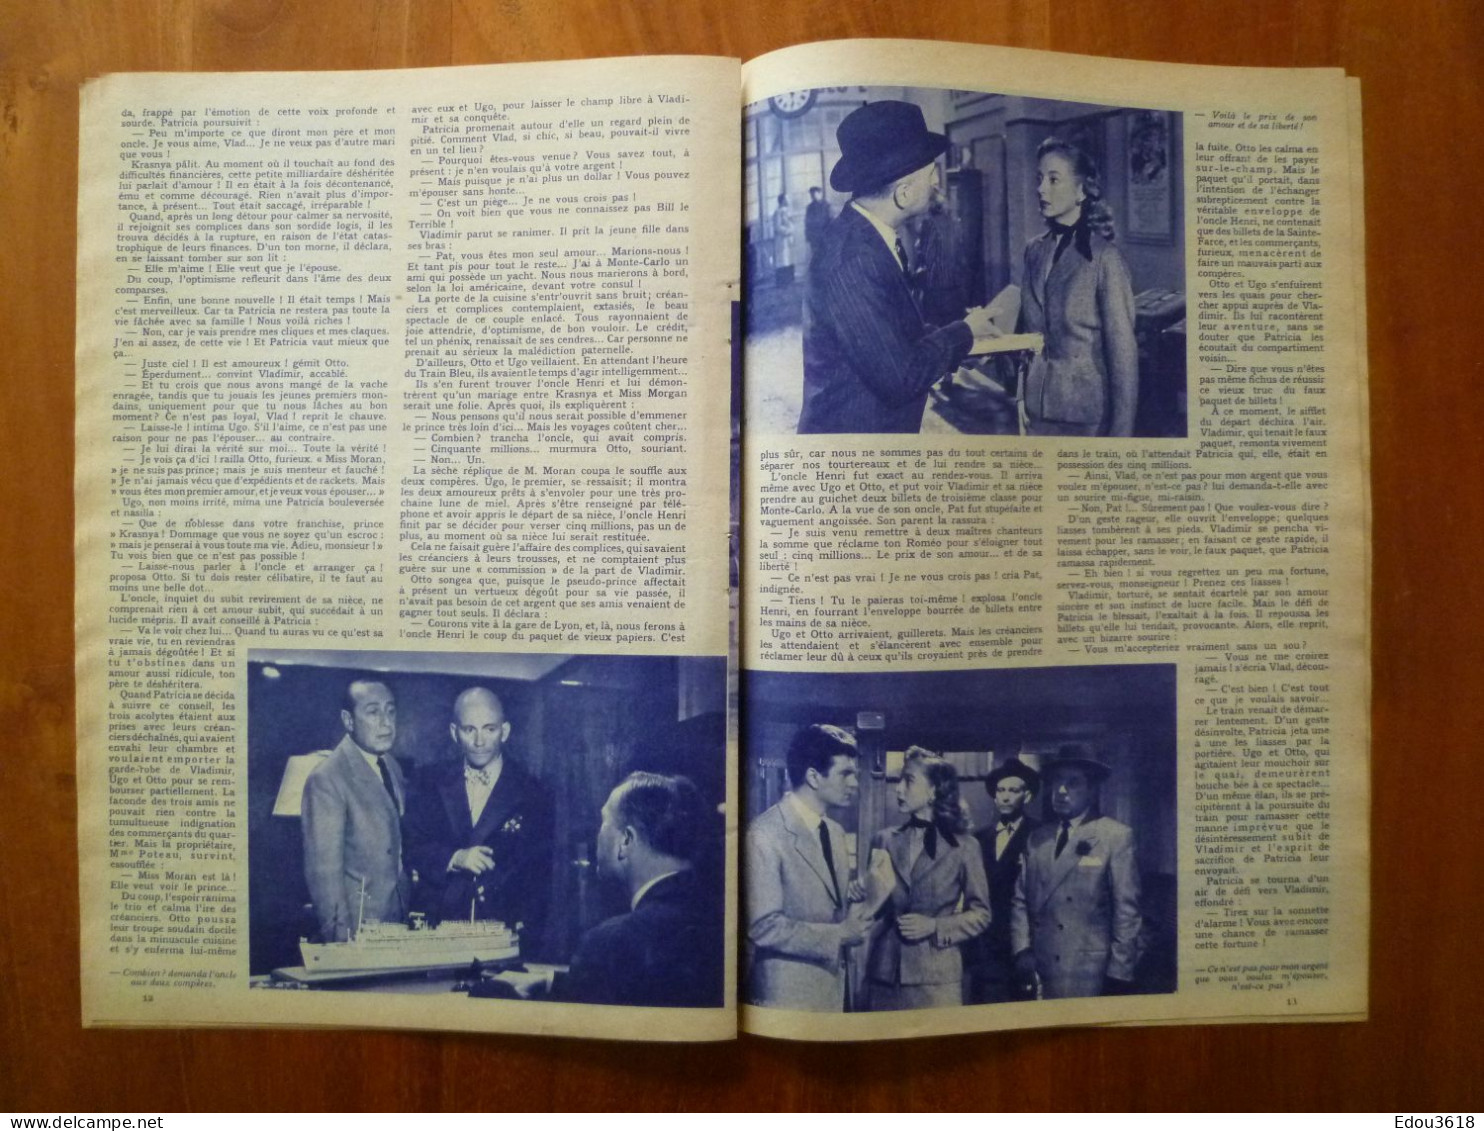 Revue Film Complet n° 362 C'est arrivé à Paris avec Evelyn Keyes Henri Vidal O'Brady Jean Wall 1953 Jacques Sernas